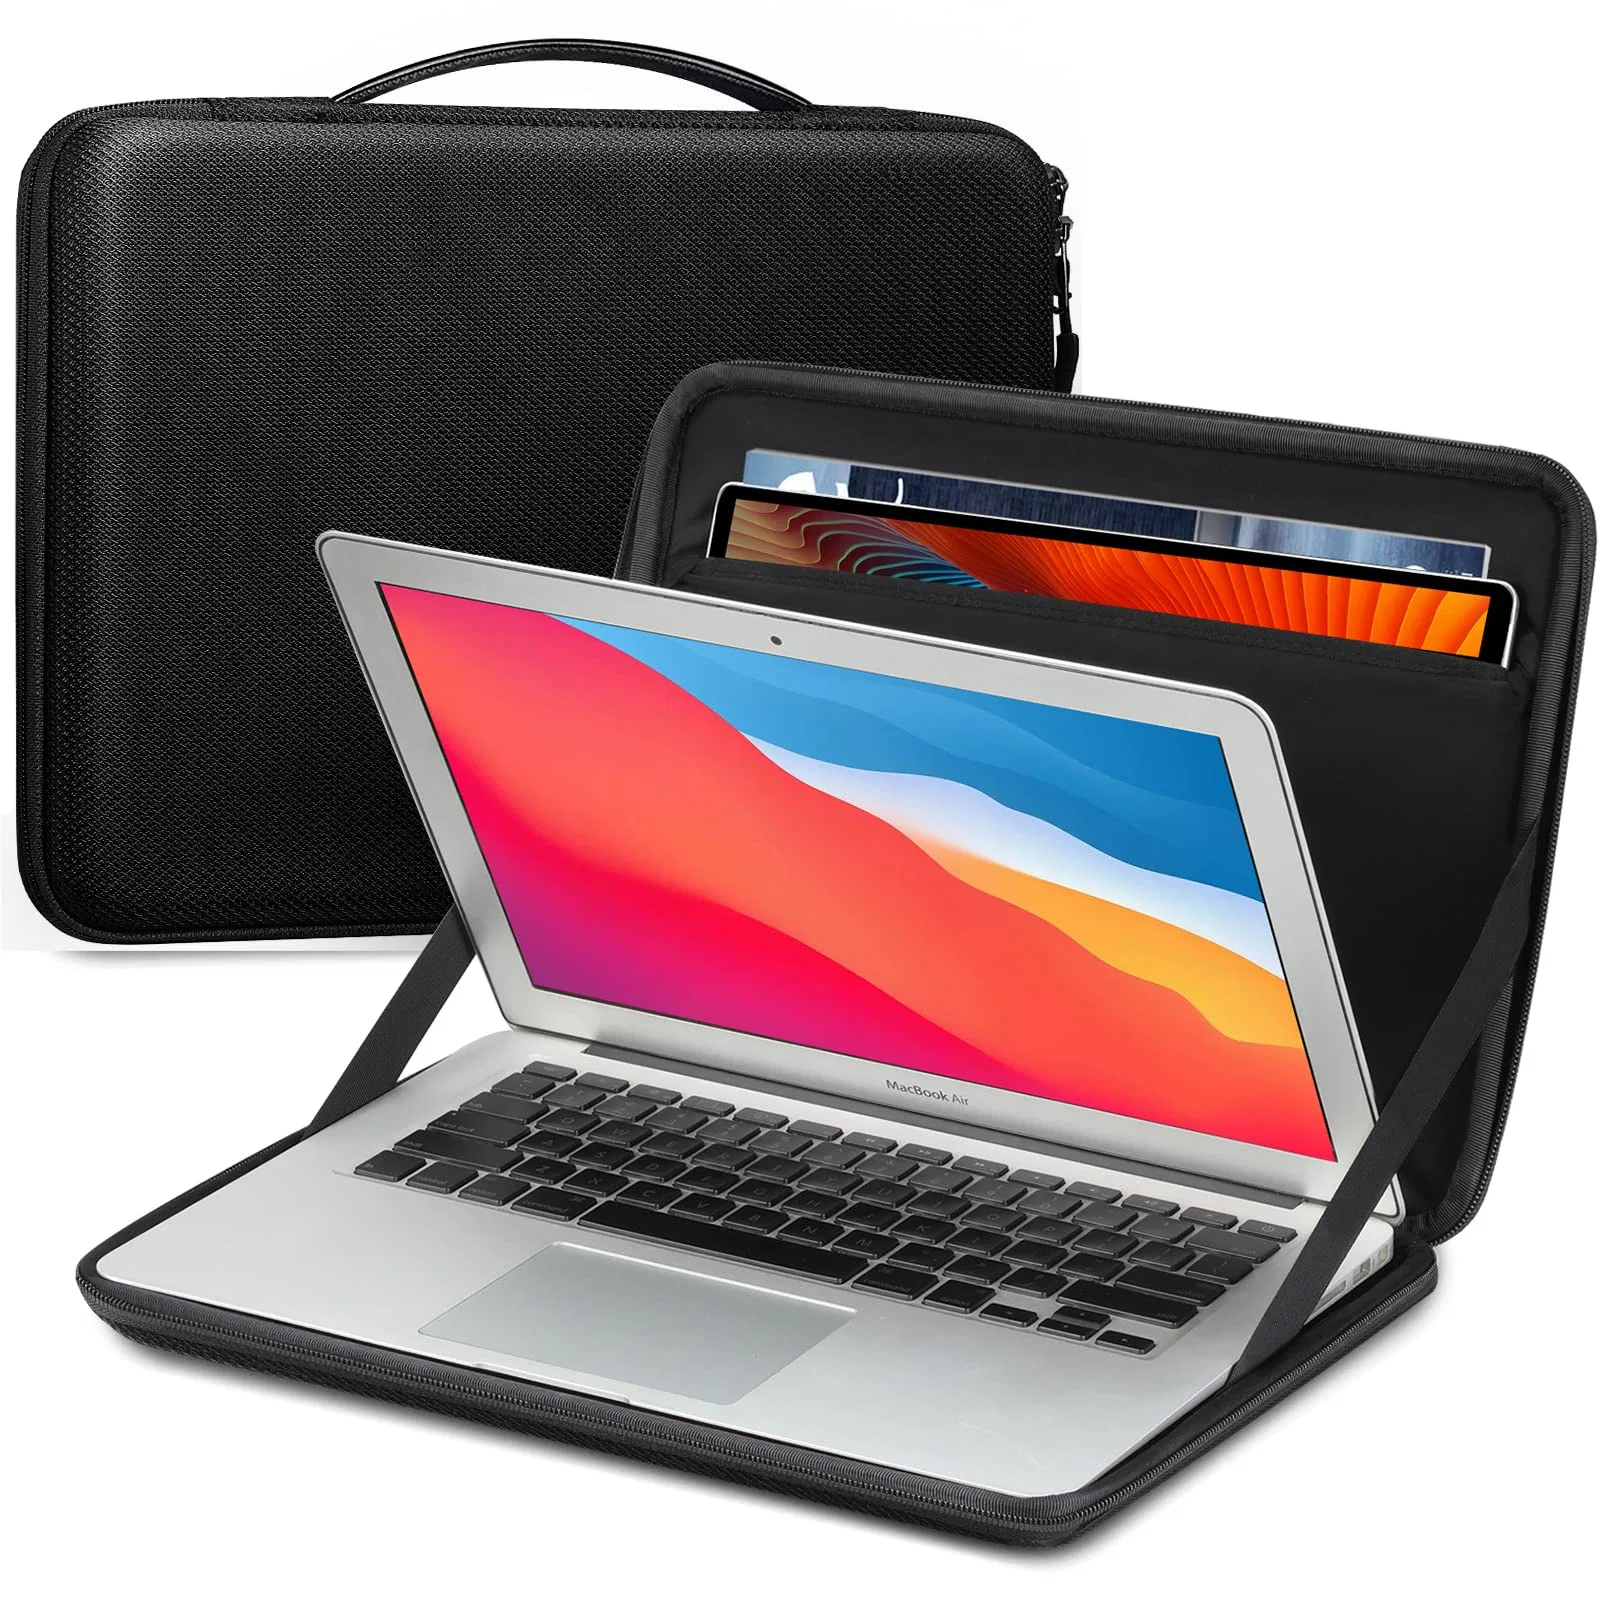 Benutzerdefinierte Zoll wasserdichte Laptop Hülle für Laptop und Tablet Schutzhülle Stoßfeste Tragetasche